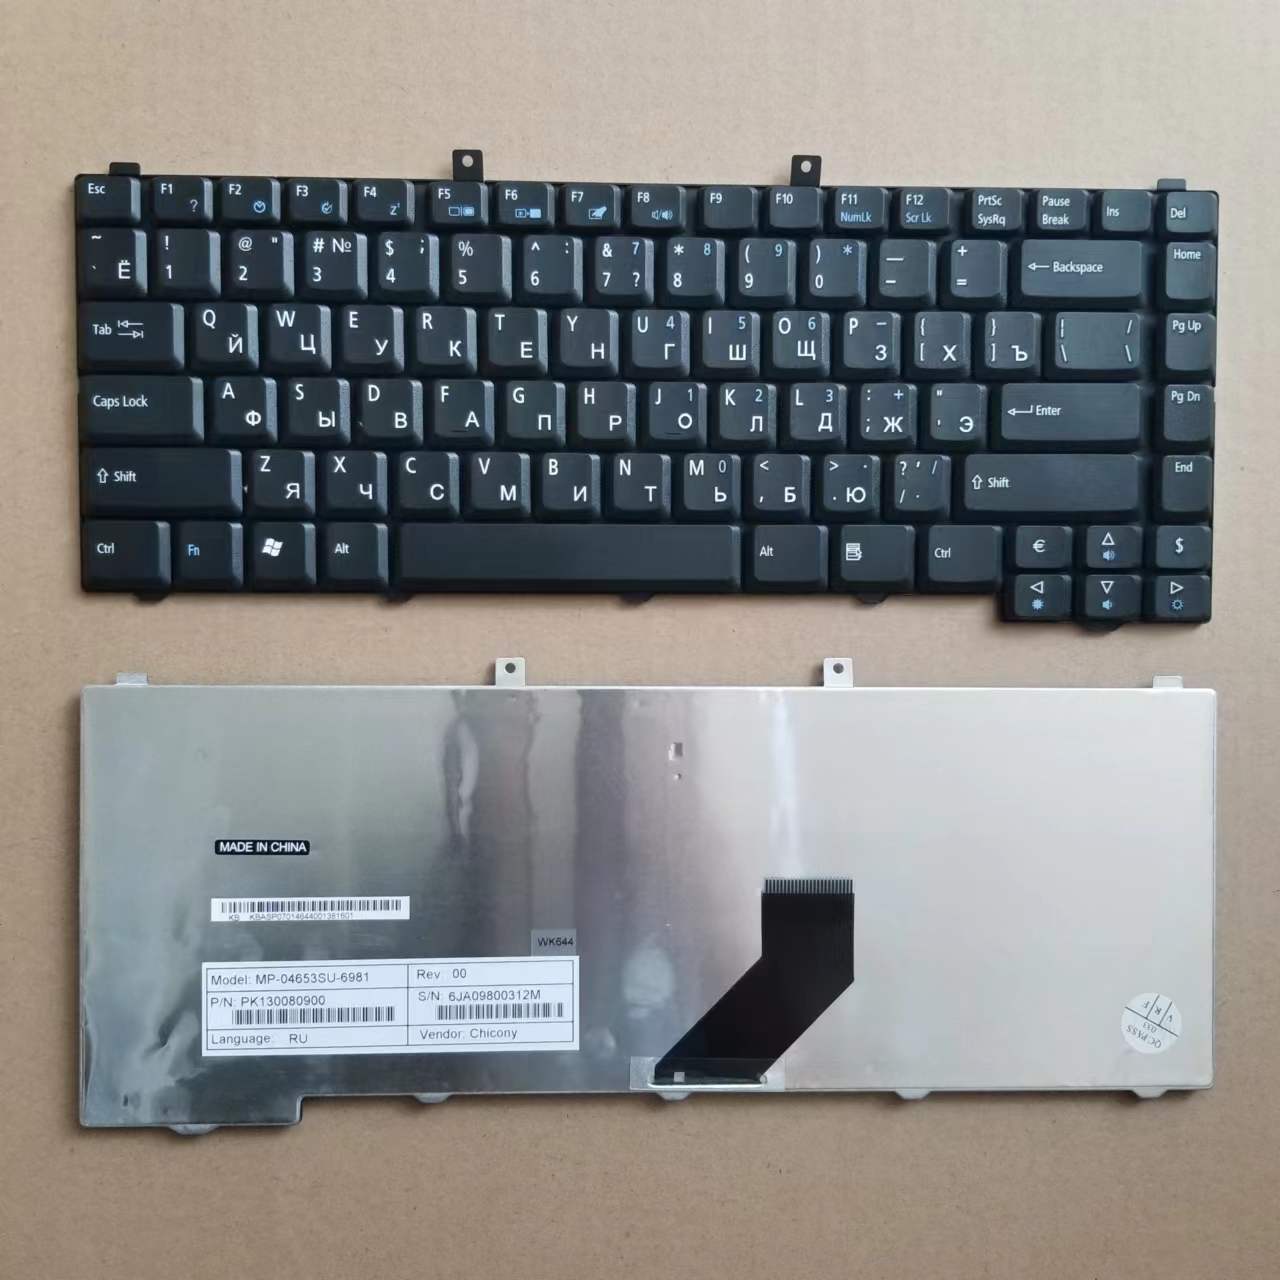 Acer Aspire için Dizüstü Bilgisayar Rus Klavye 5100 3100 3600 3690 5610 5500 5650 5680 Serisi Ru Versiyonu Siyah MP-04653US-6981